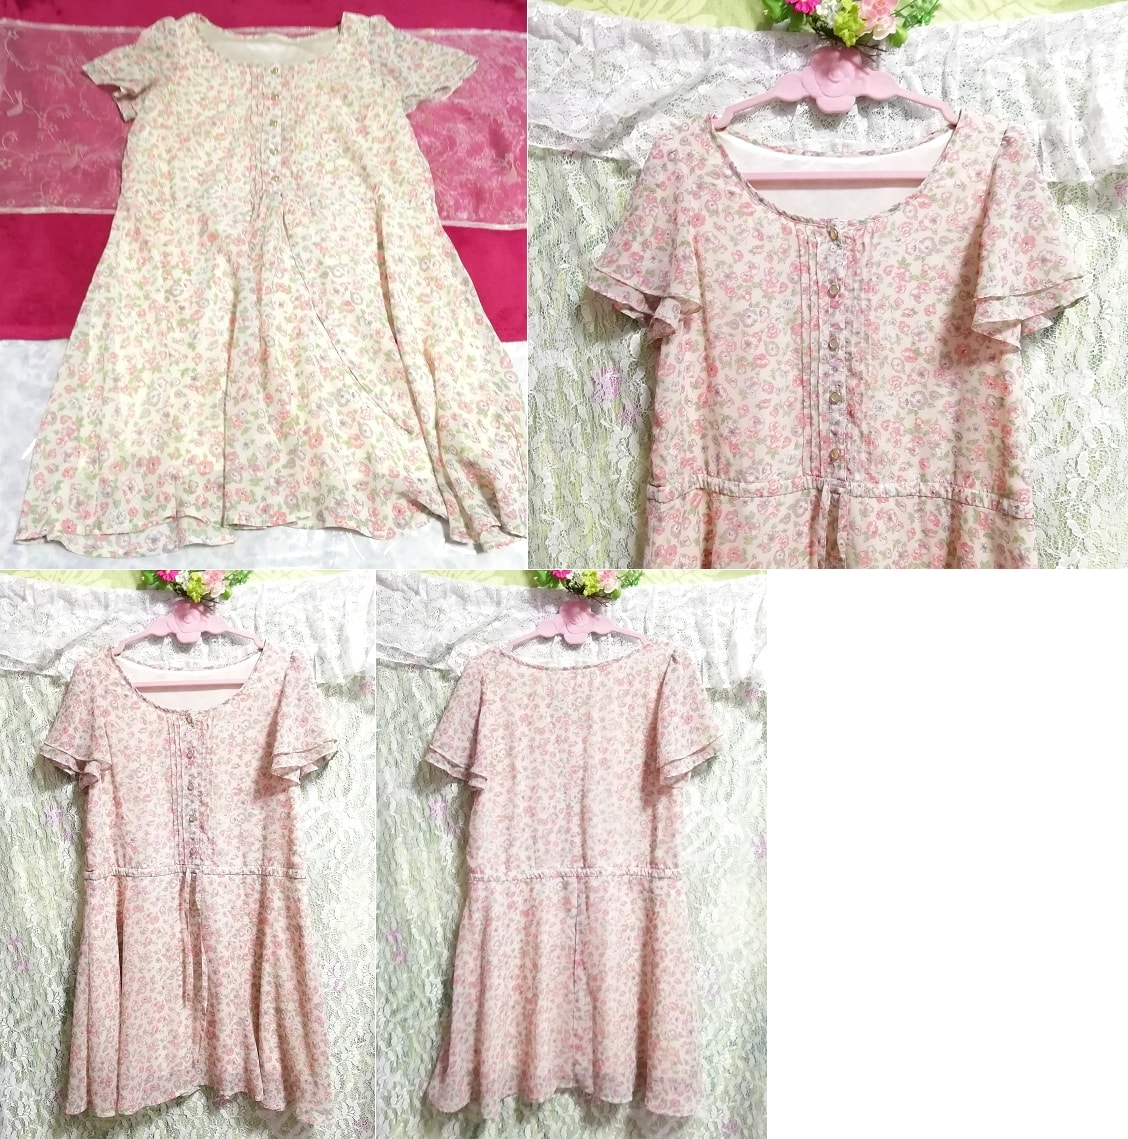 Pale pink floral pattern chiffon beautiful button negligee nightgown short sleeve tunic dress, mini skirt, m size